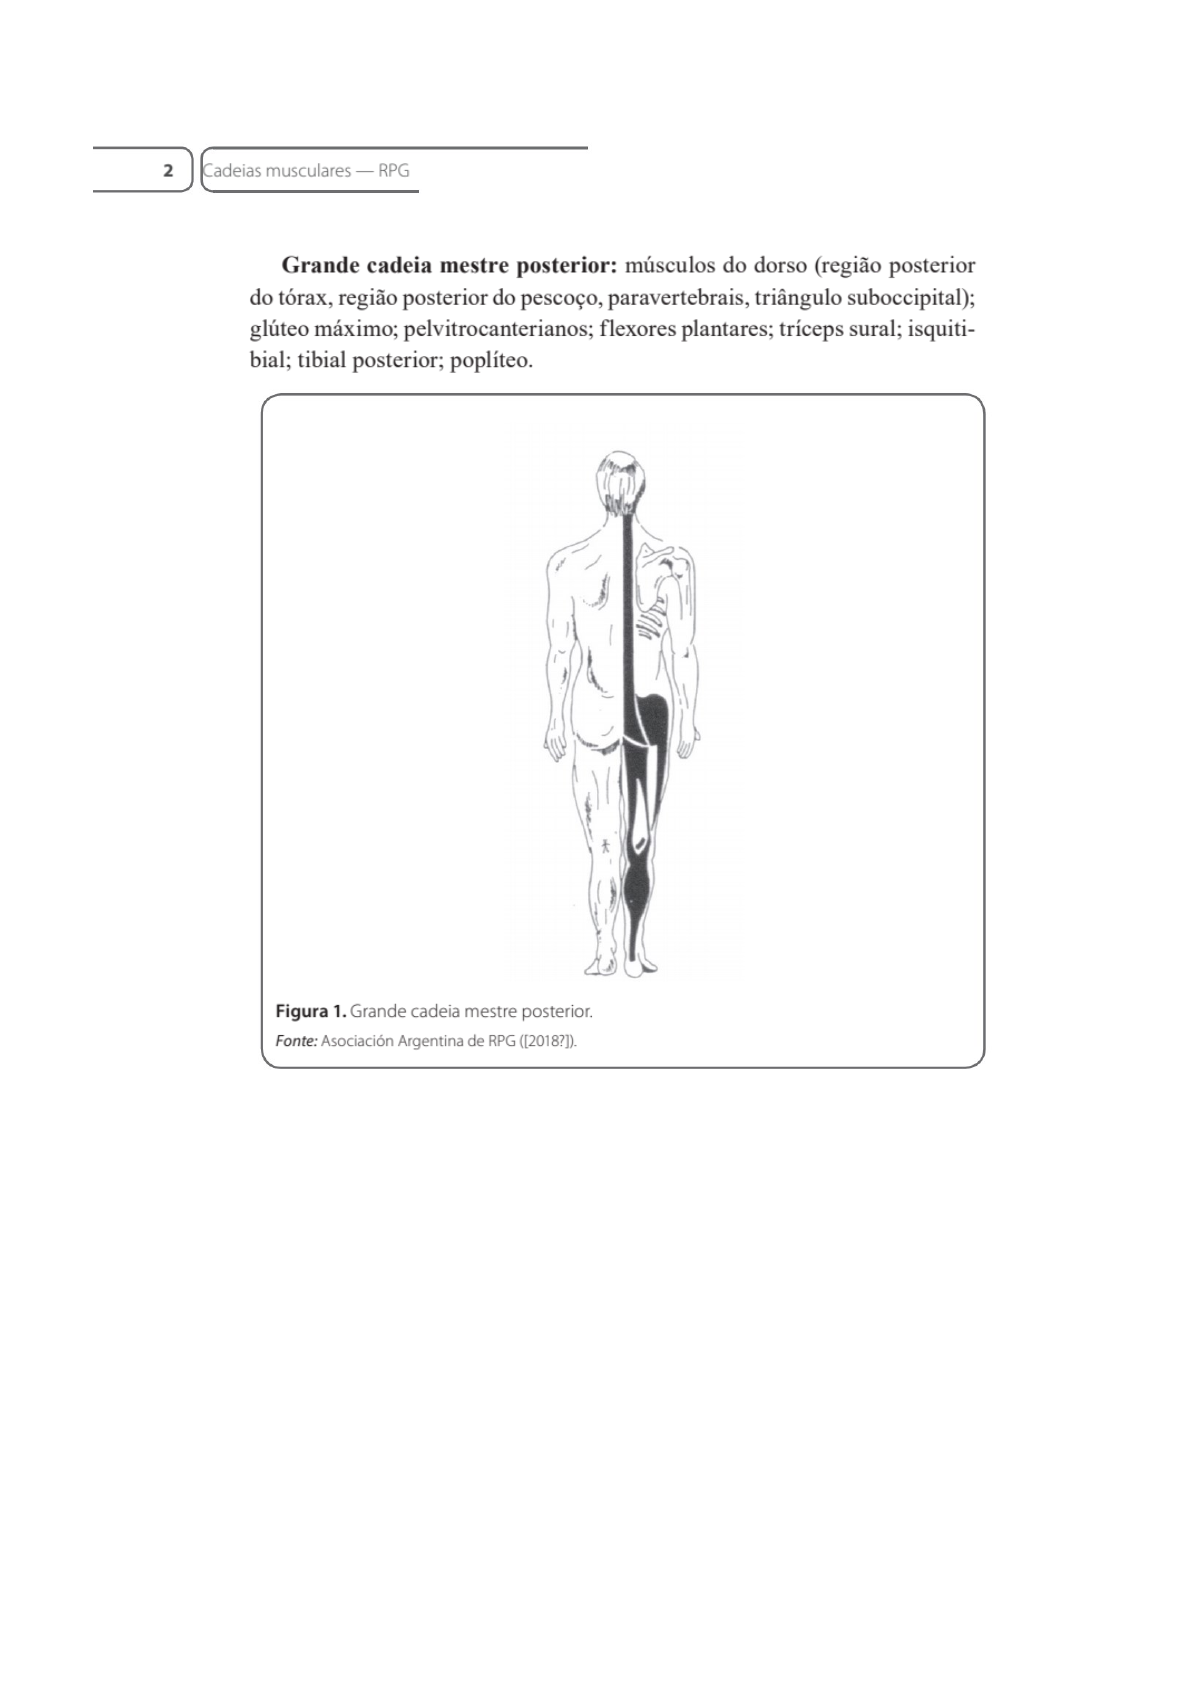 cadeias musculares - Fisioterapia em Ortopedia e Traumatologia